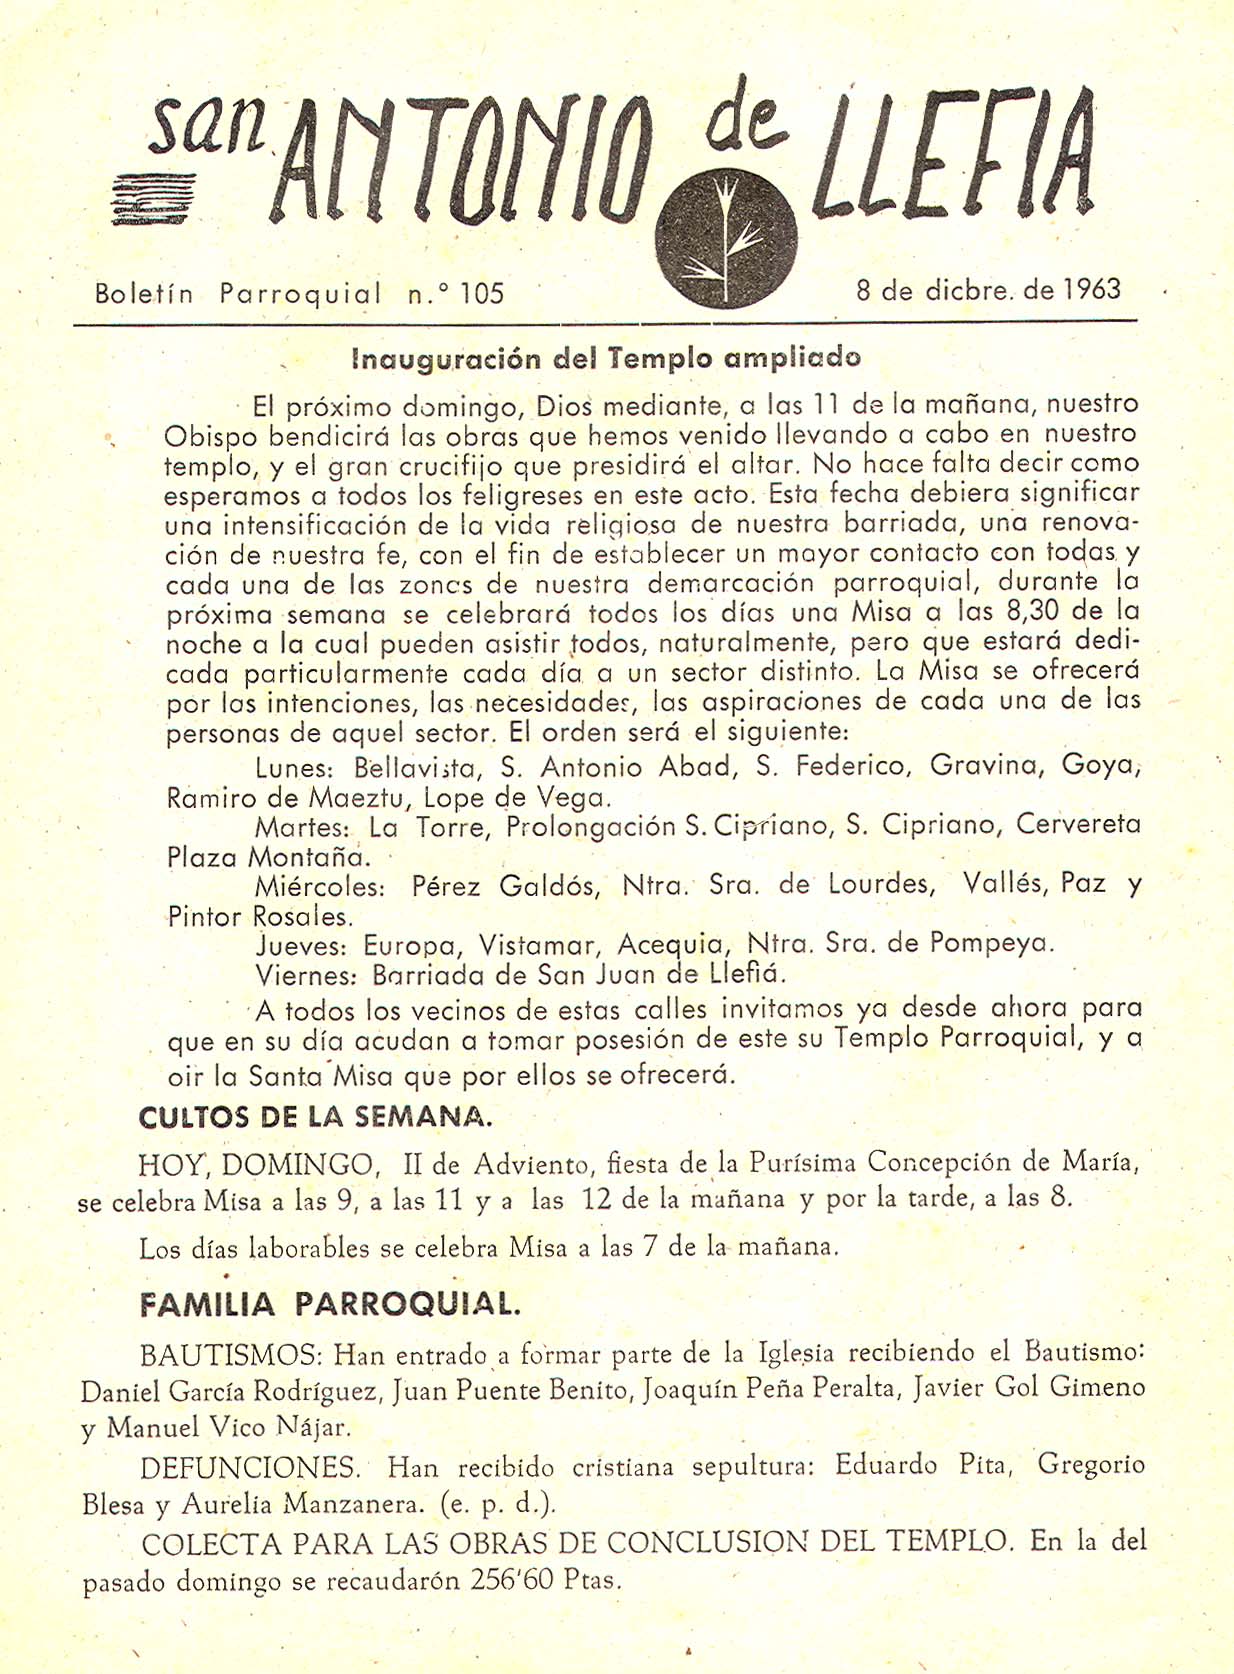 1963 Boletin parroquial nÃºm 105